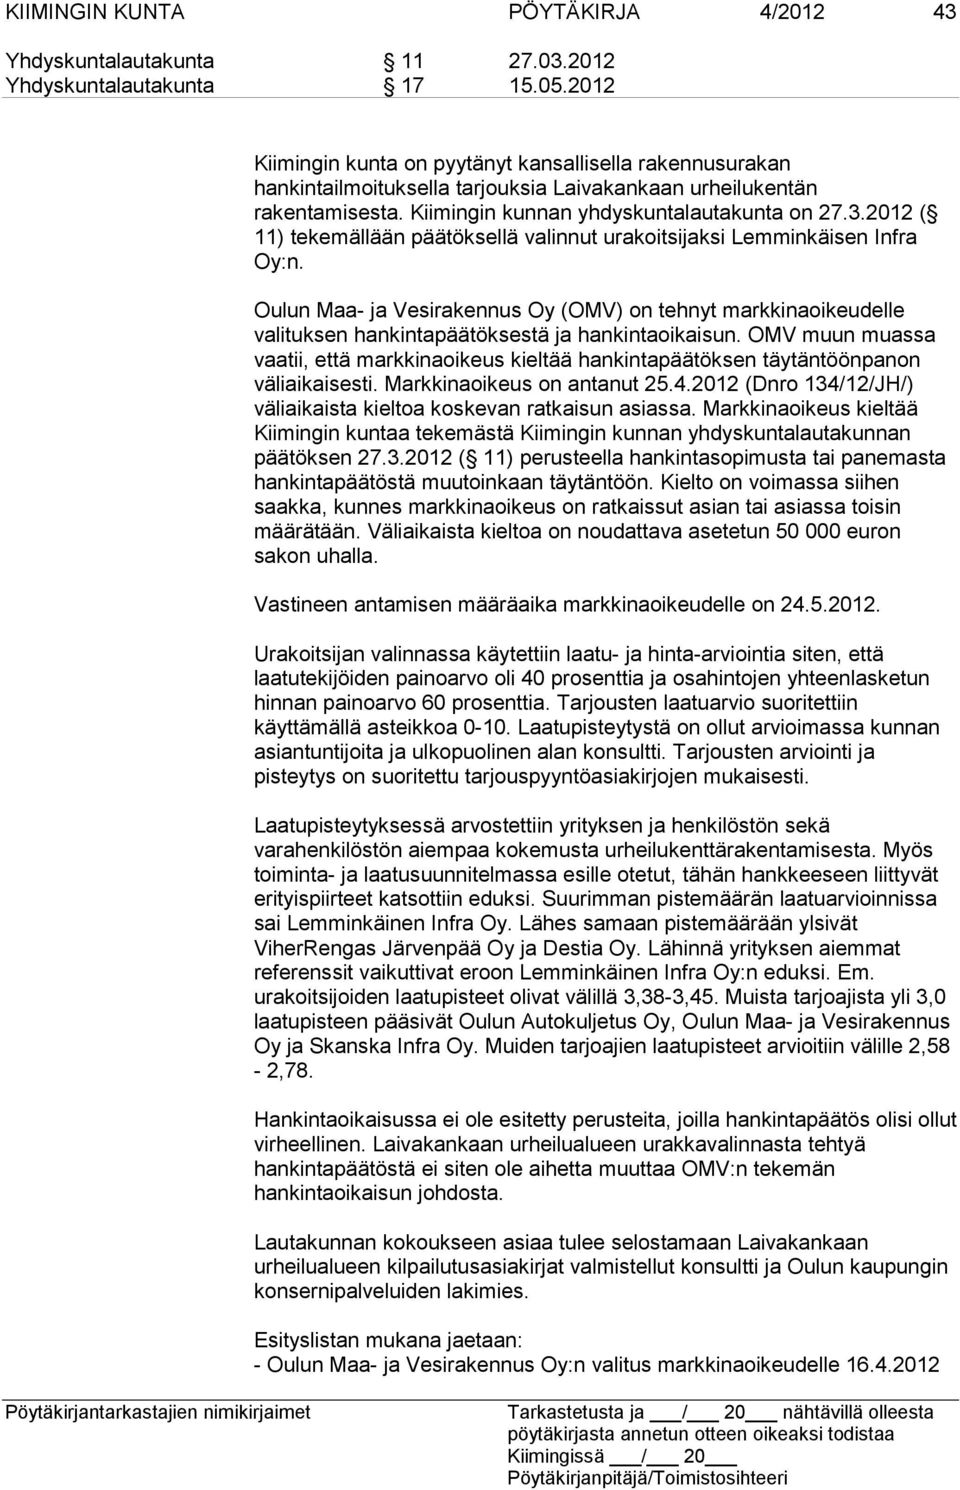 2012 ( 11) tekemällään päätöksellä valinnut urakoitsijaksi Lemminkäisen Infra Oy:n. Oulun Maa- ja Vesirakennus Oy (OMV) on tehnyt markkinaoikeudelle valituksen hankintapäätöksestä ja hankintaoikaisun.